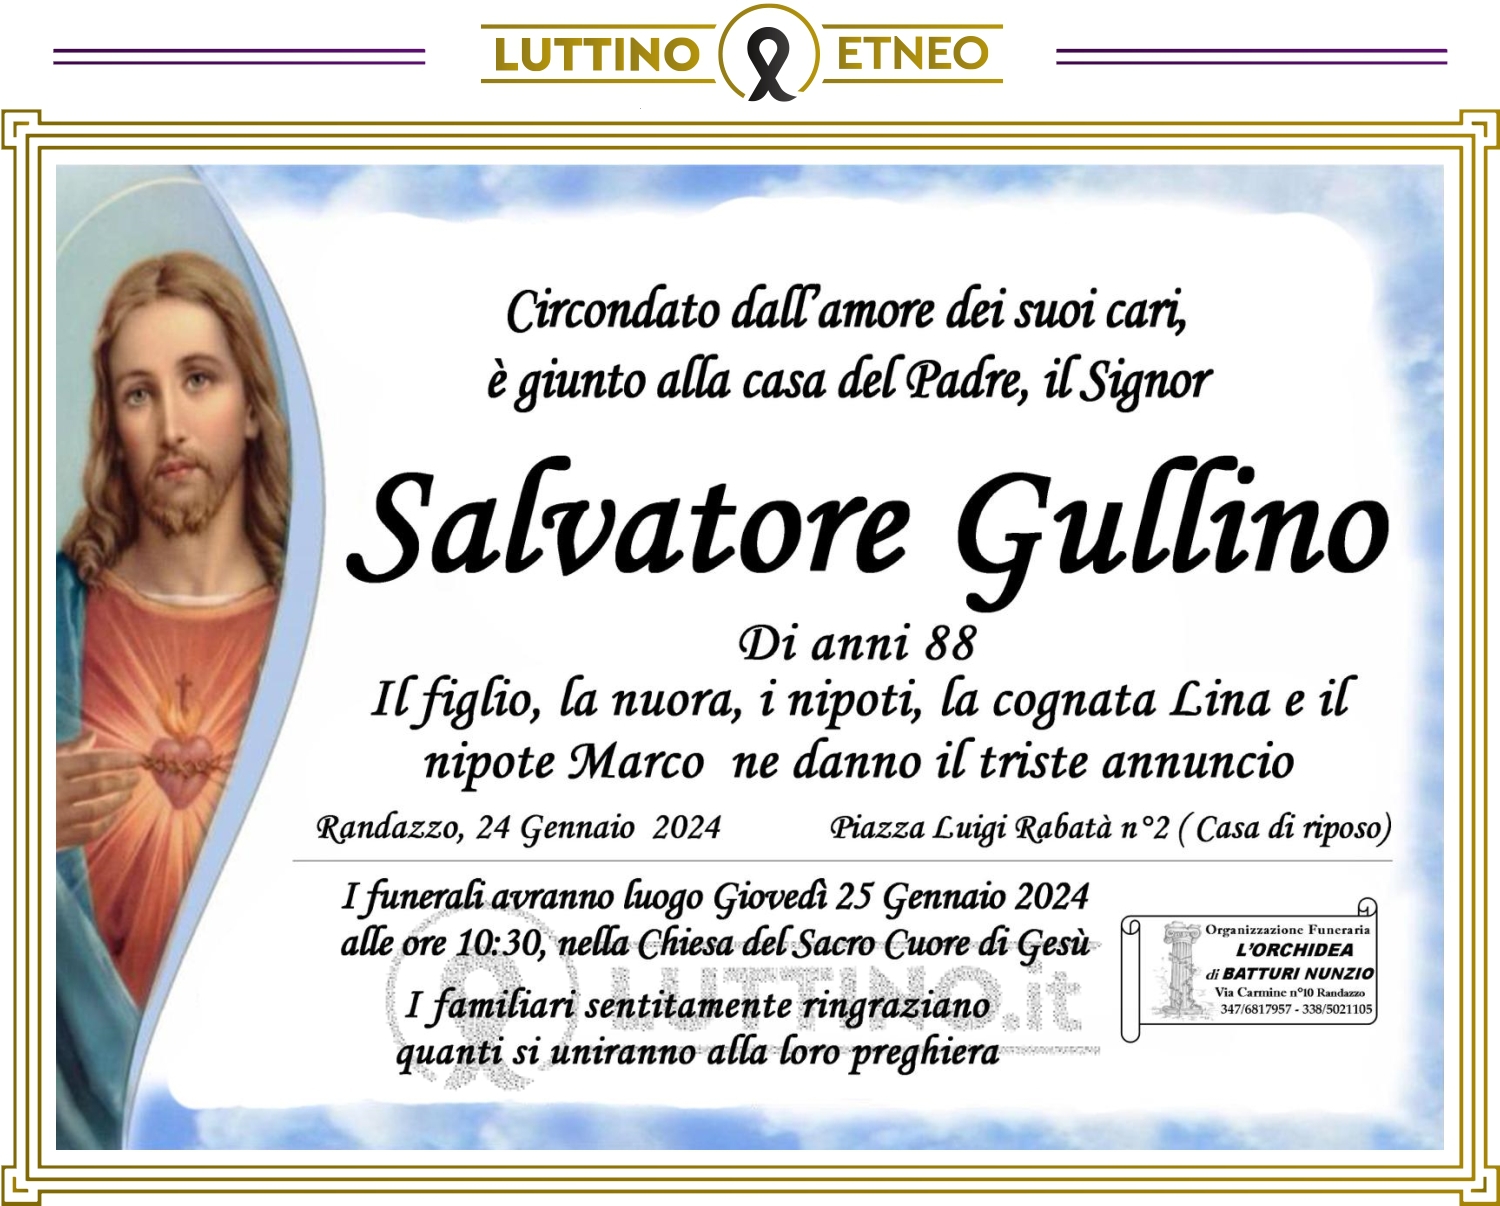 Salvatore Gullino